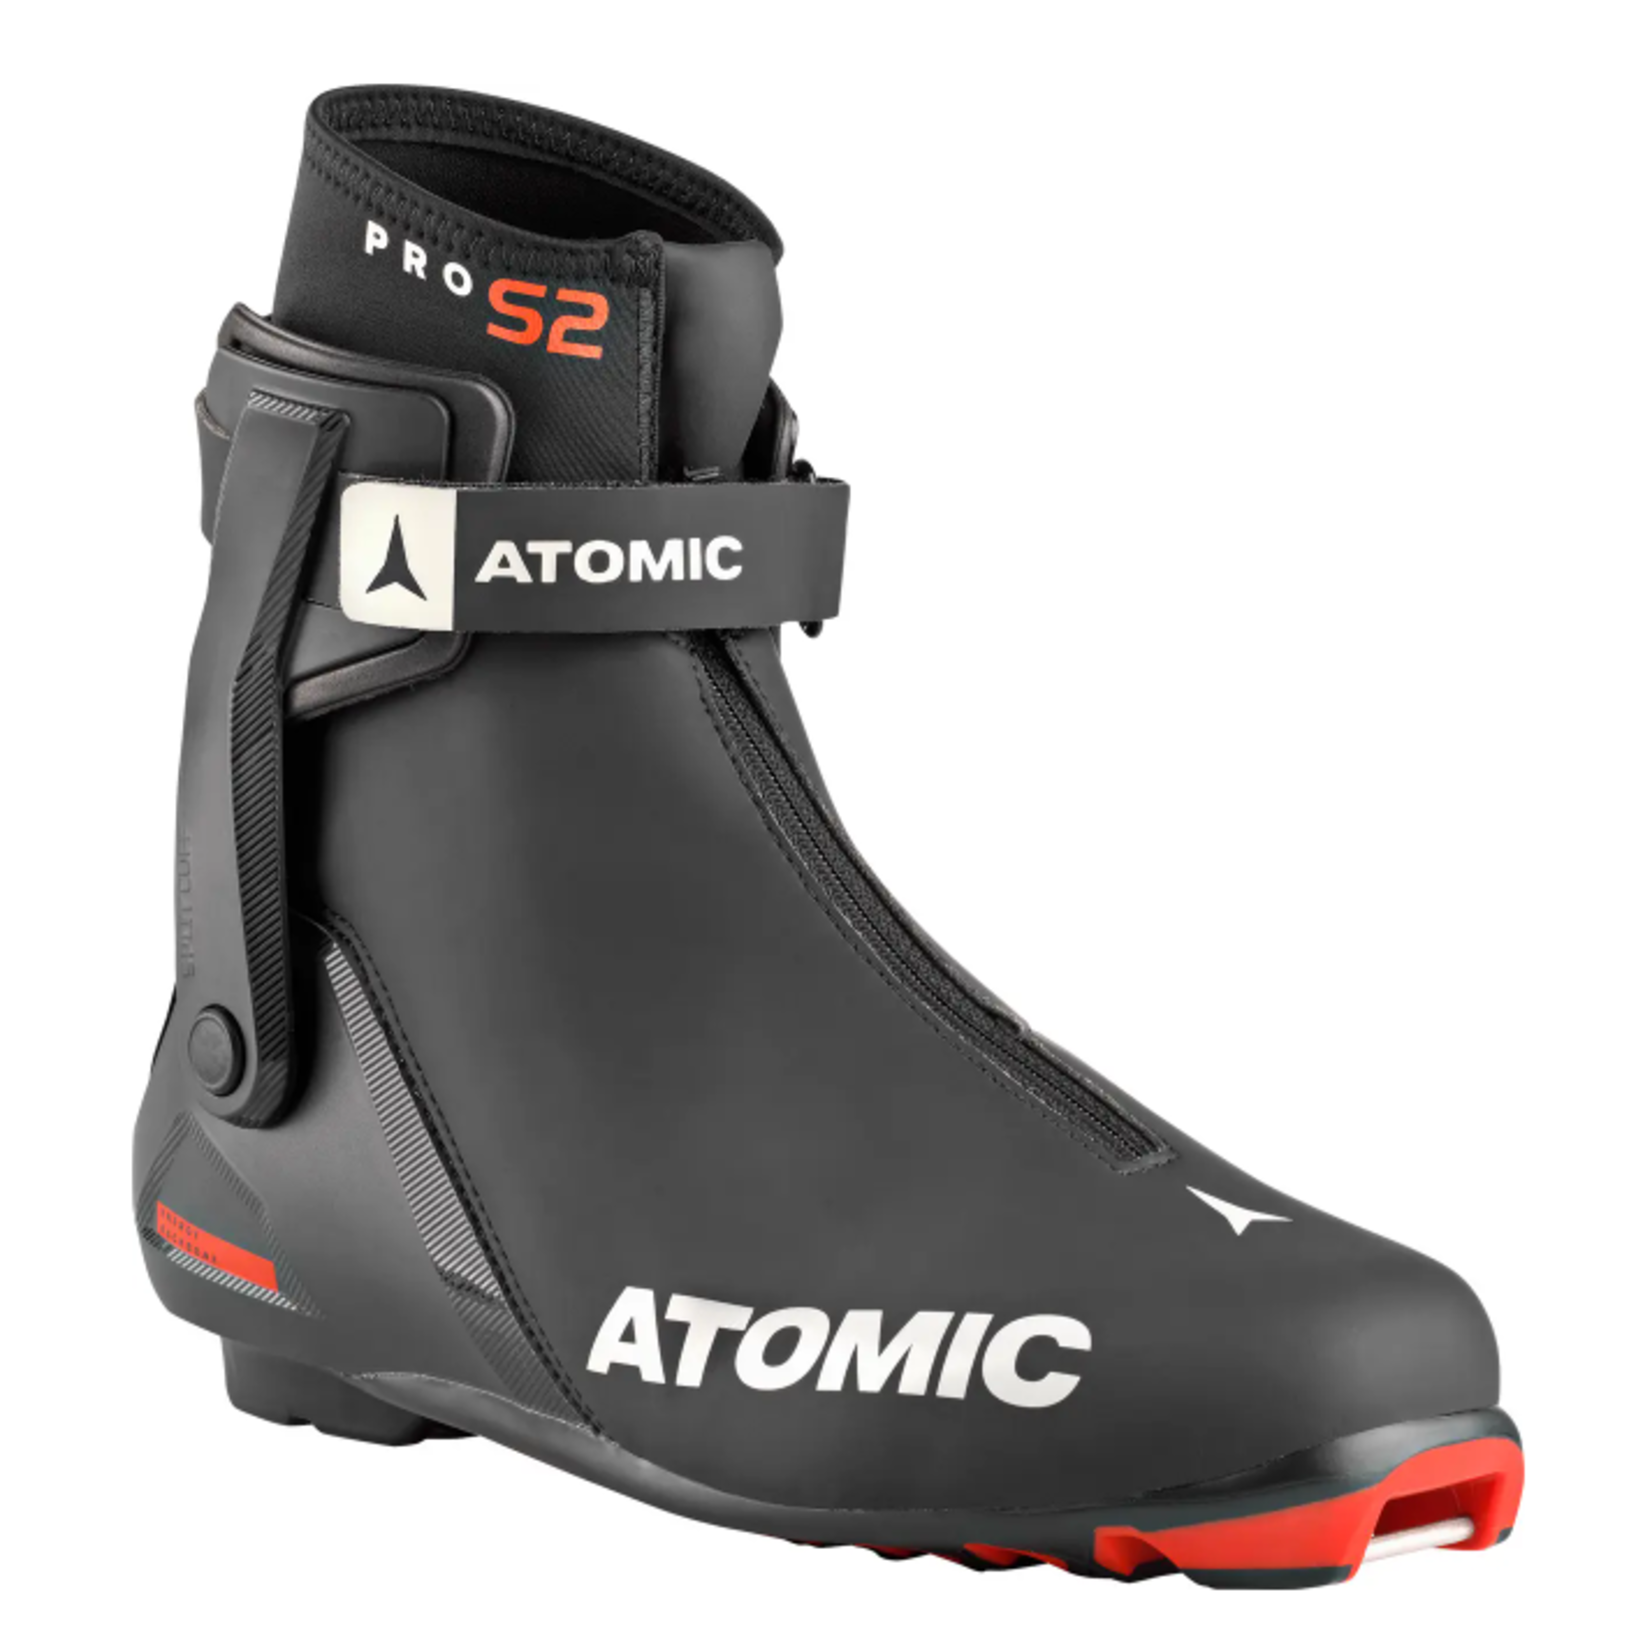 Atomic Atomic Pro S2